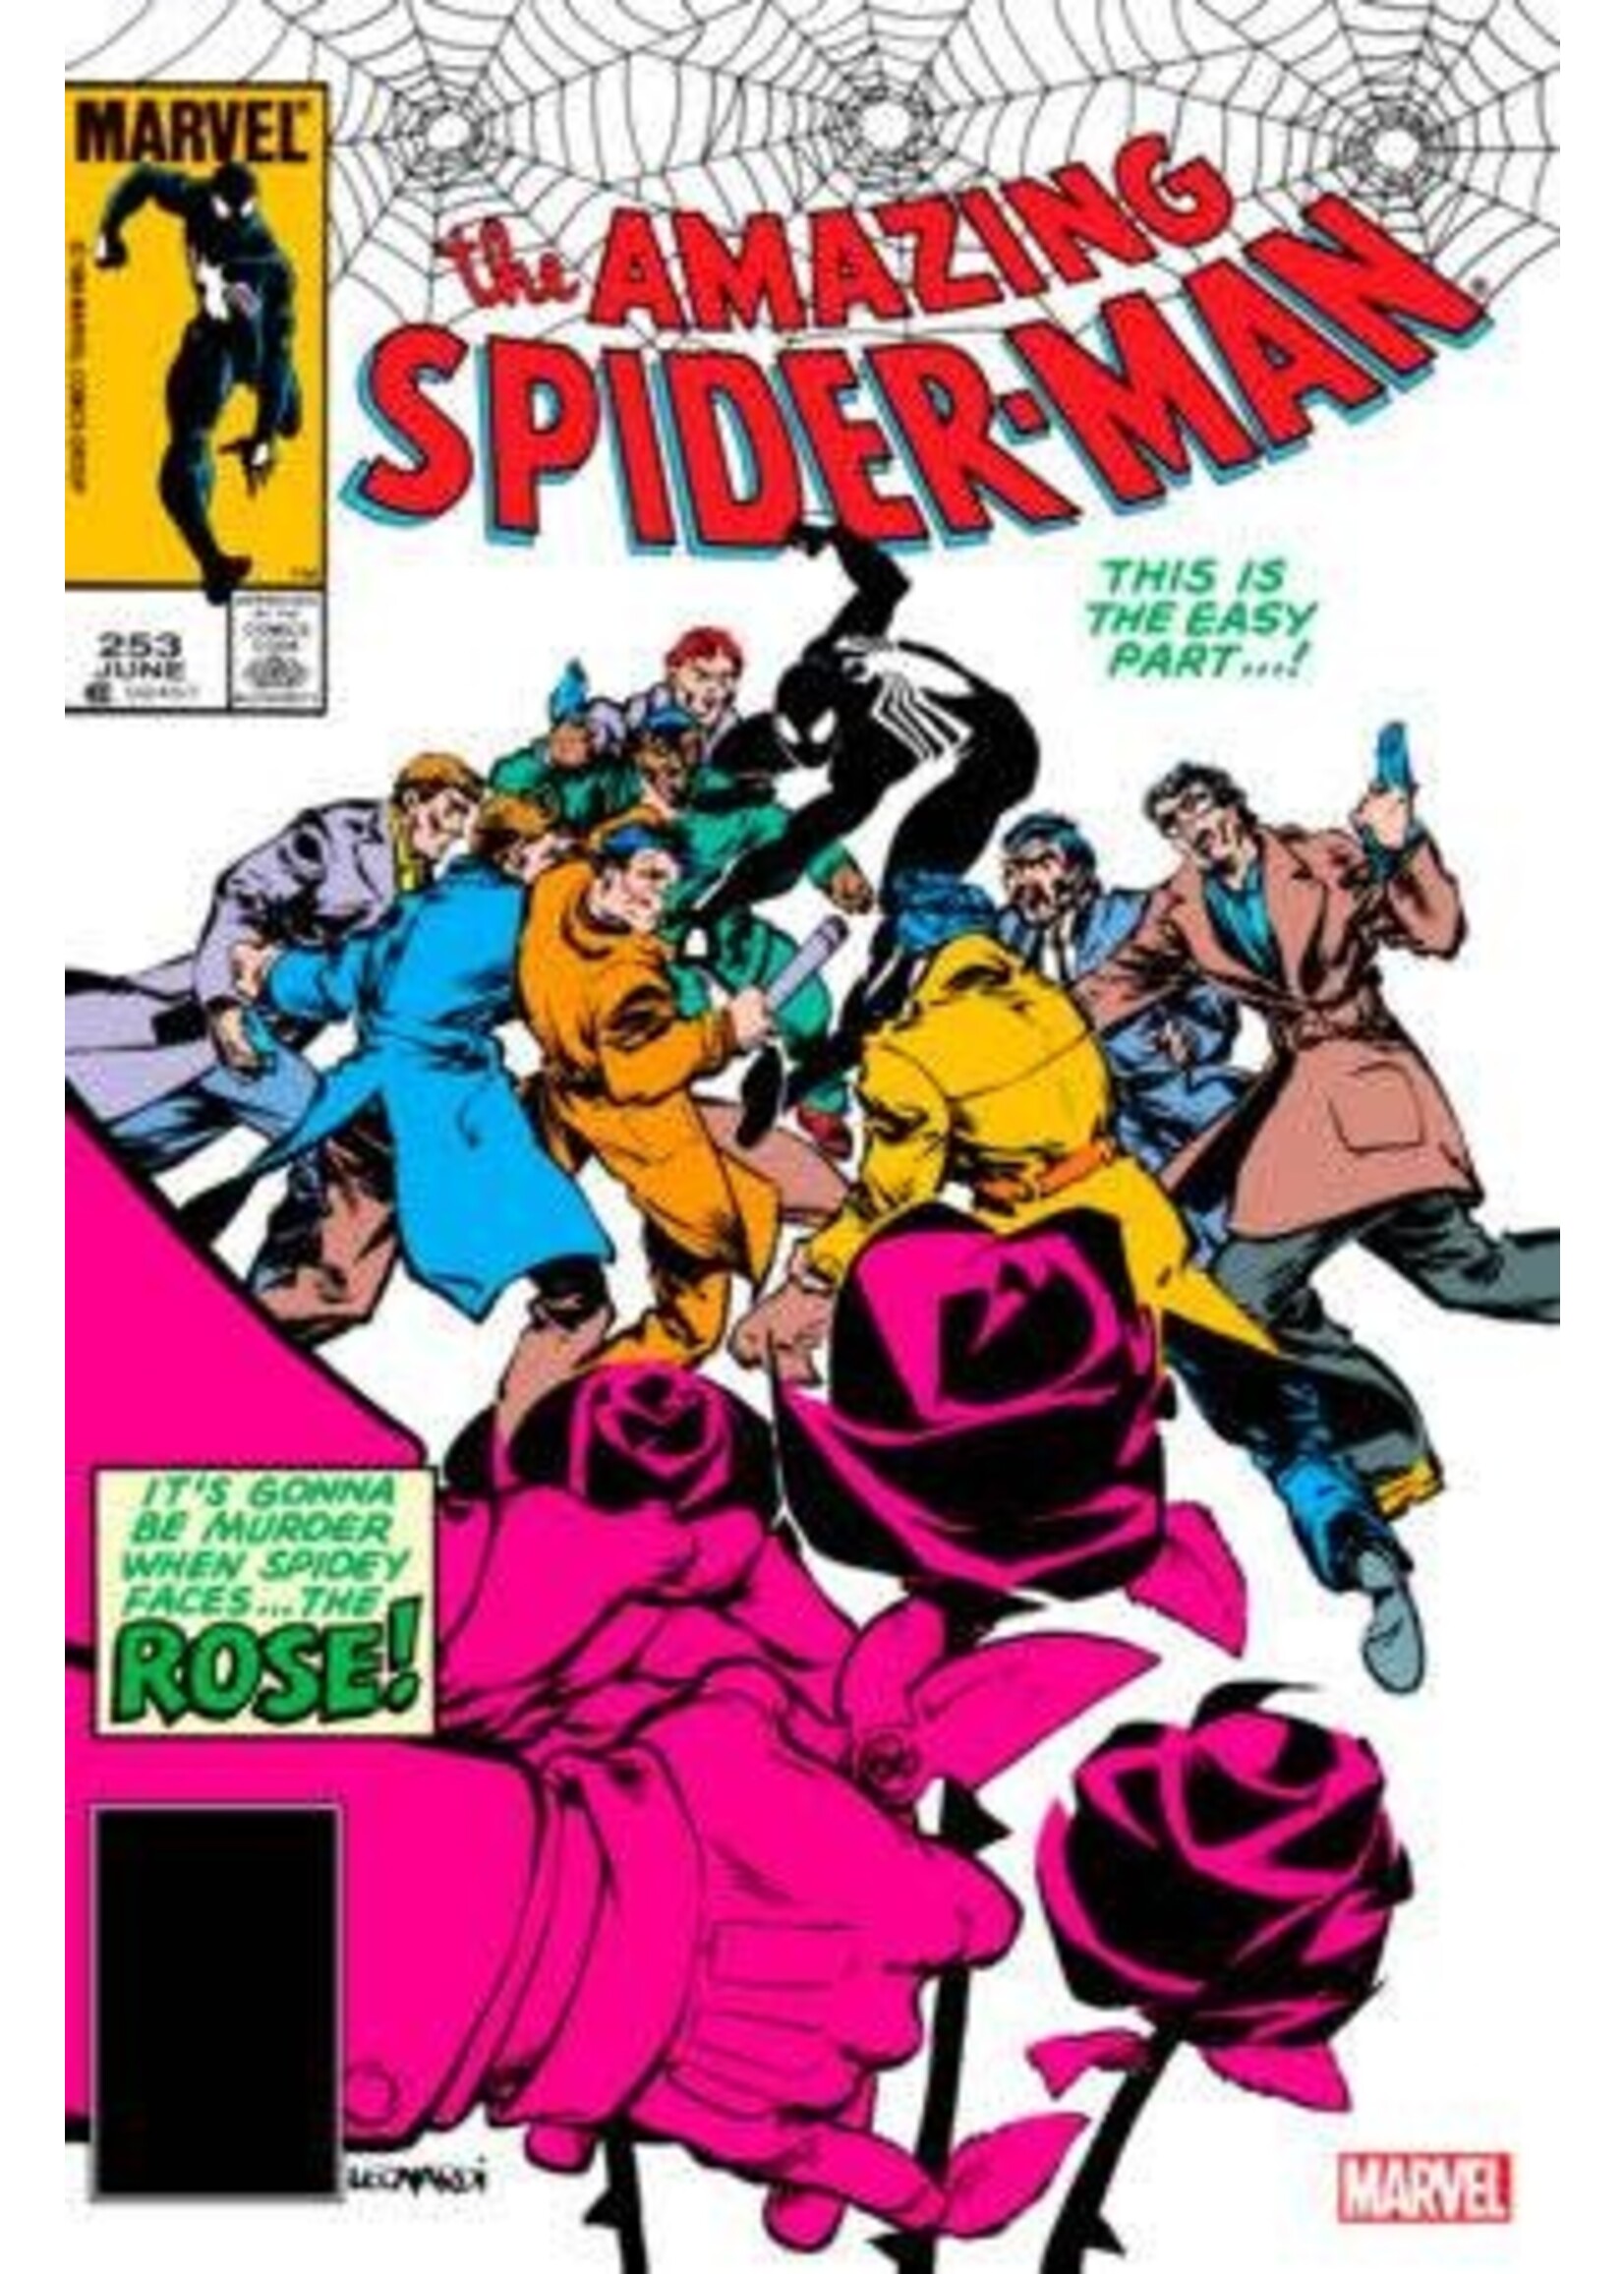 MARVEL COMICS AMAZING SPIDER-MAN #253 FACSIMILE EDITION